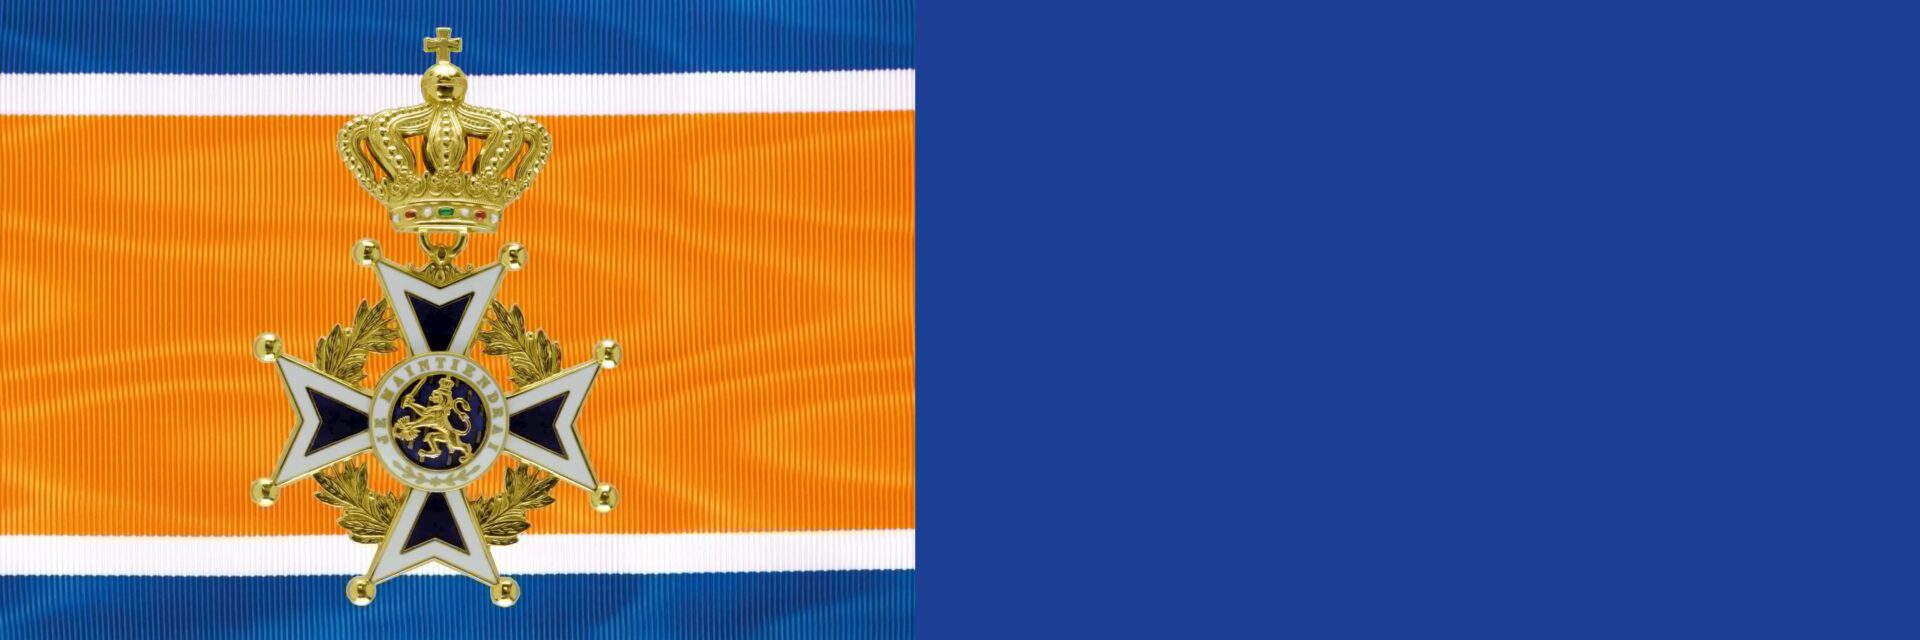 Oranje-Nassau